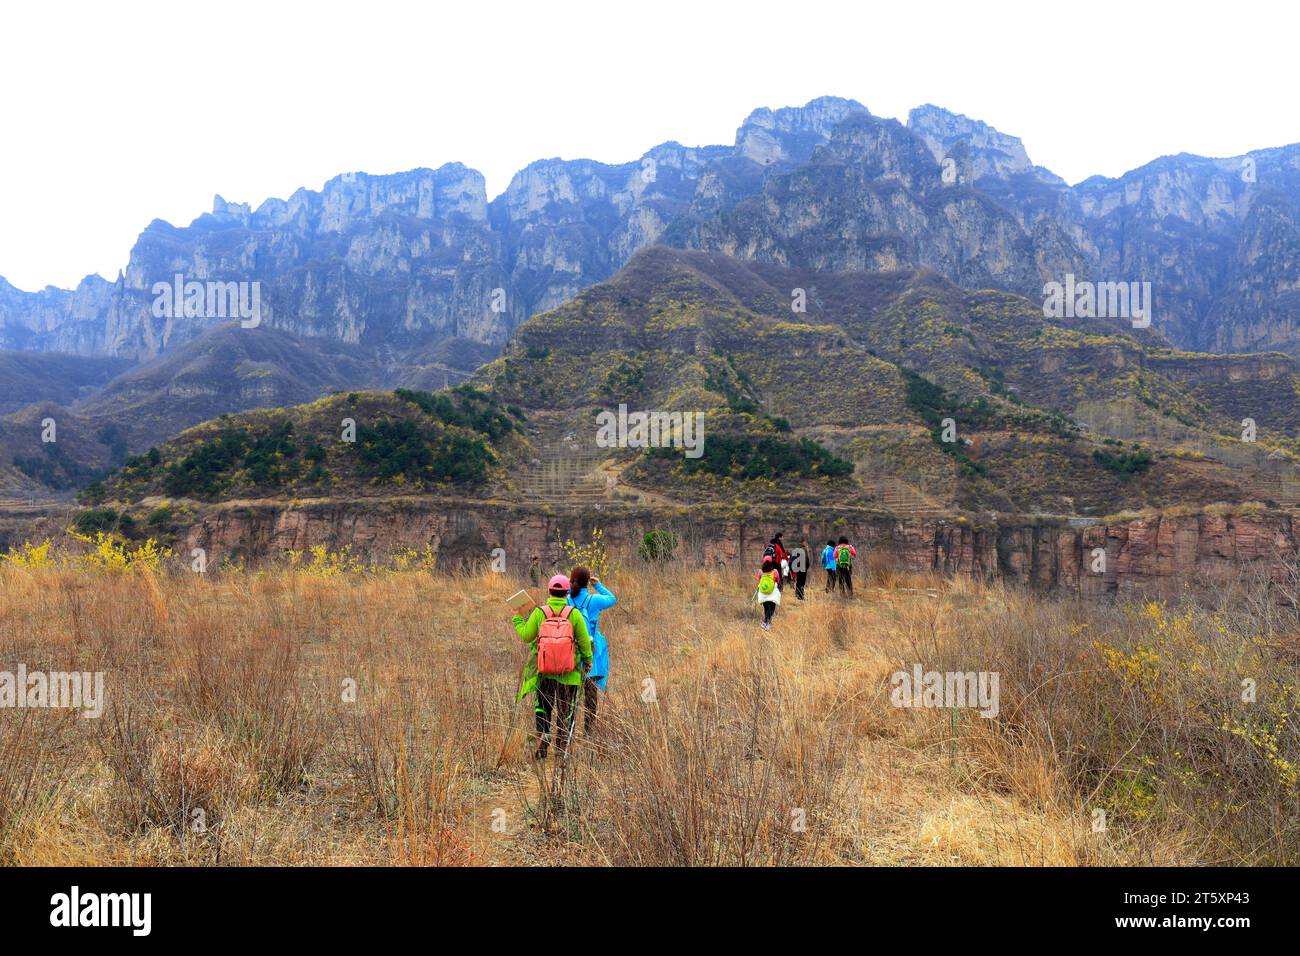 Tourists in Wanxian mountain Scenic spot, China Stock Photo